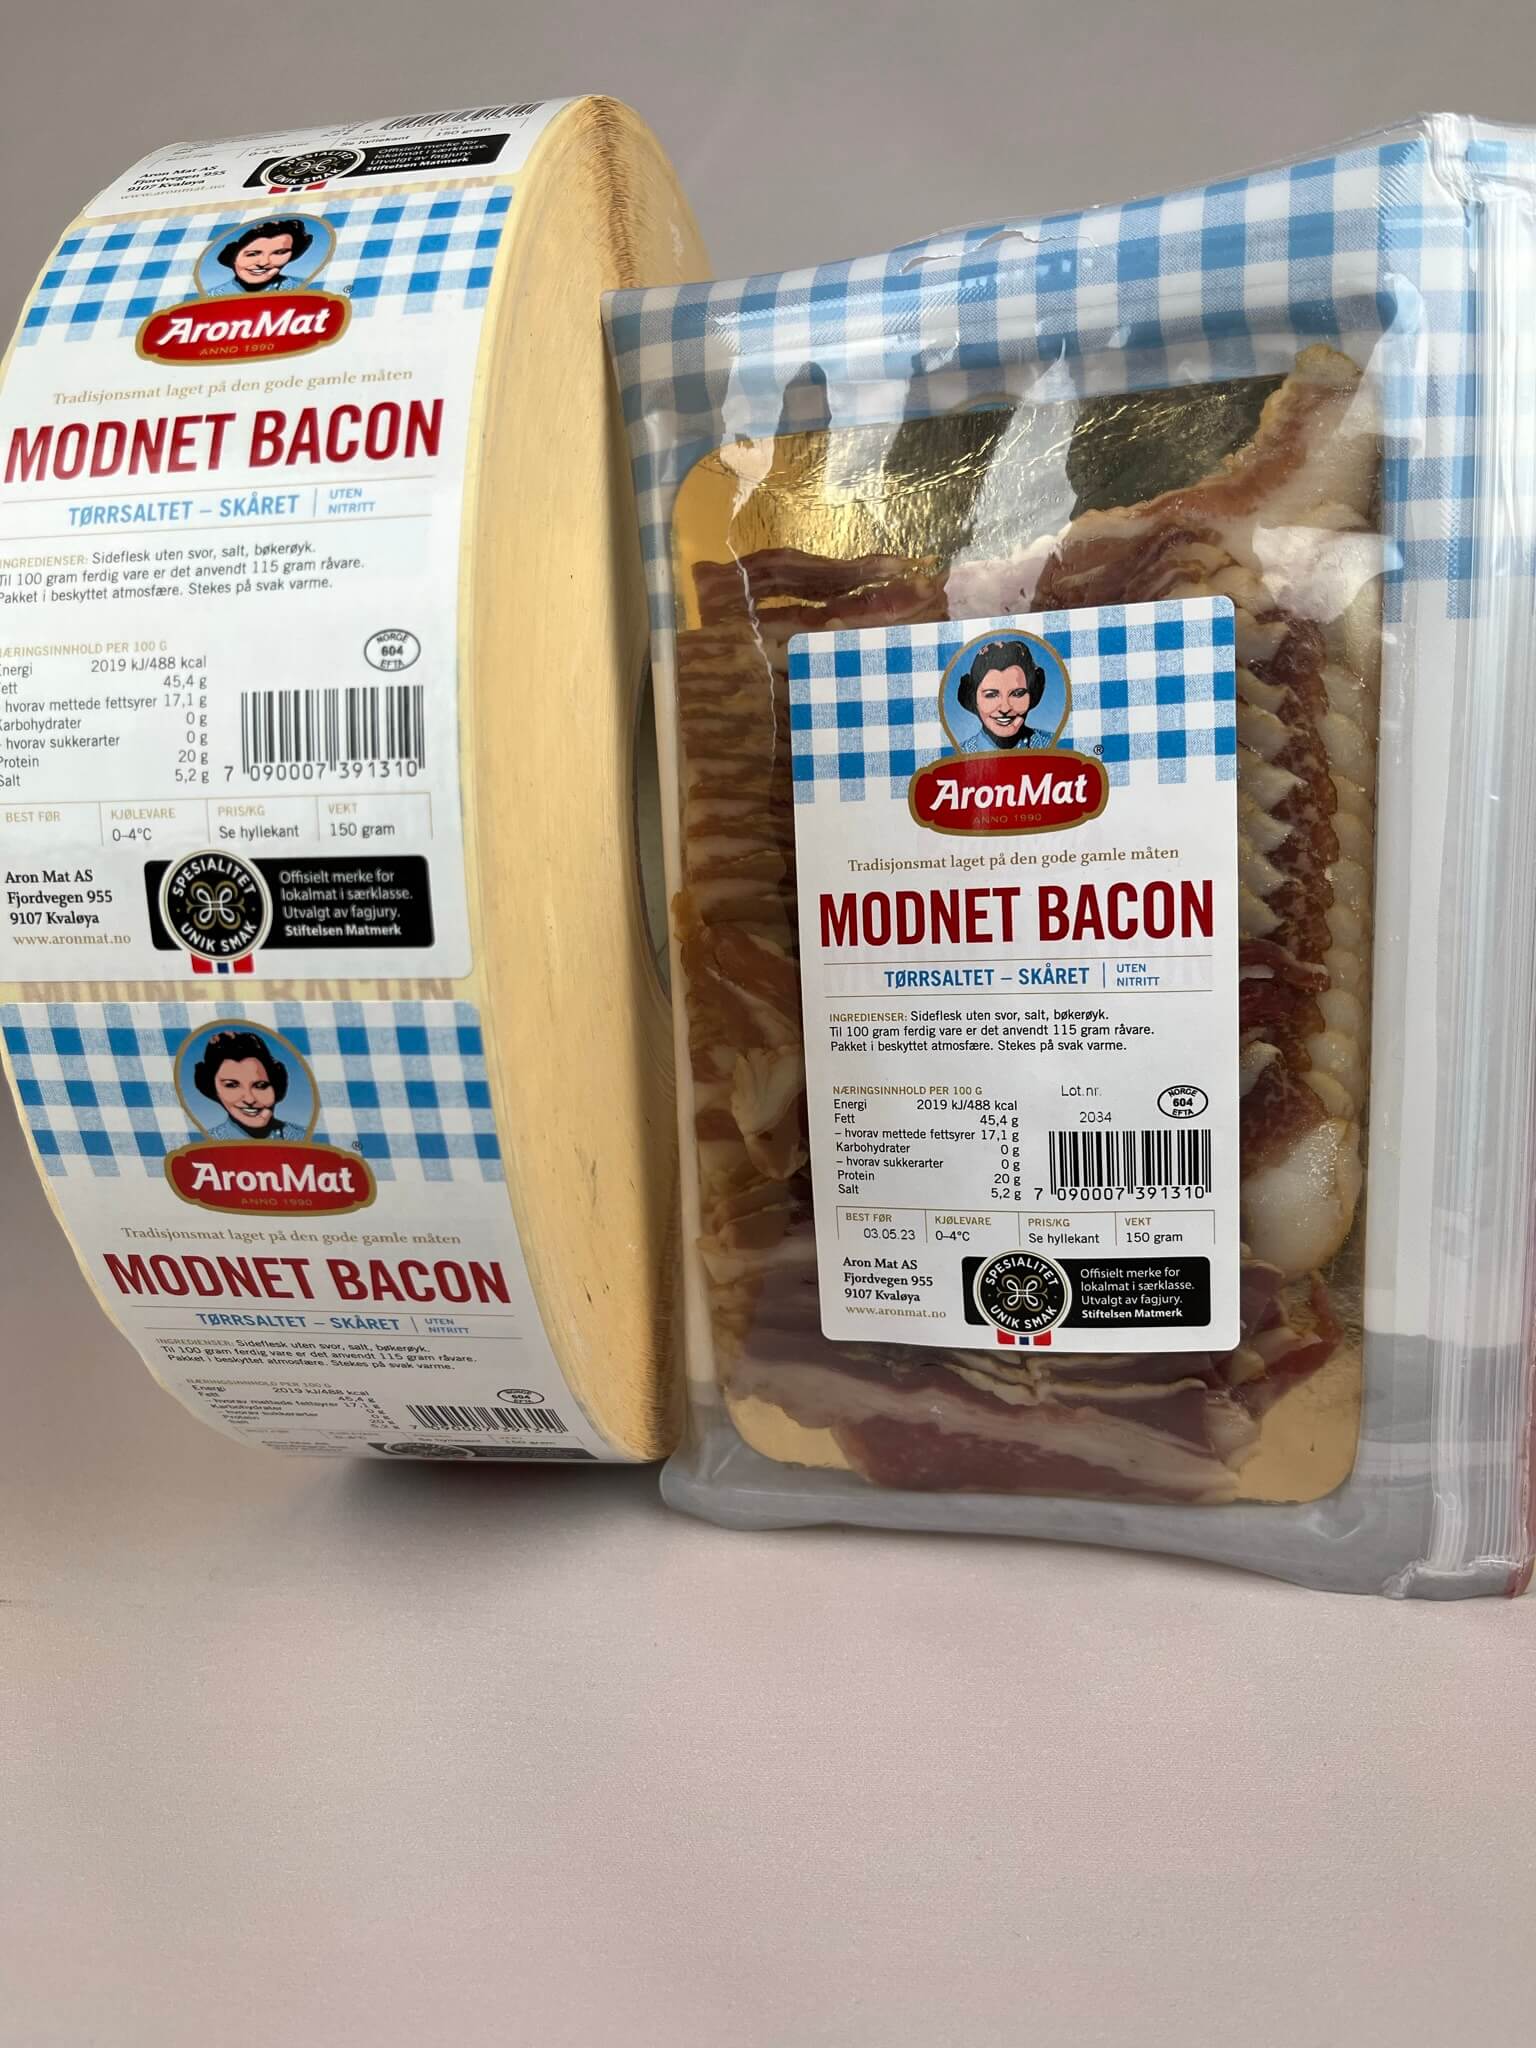 Bilde viser Modnet bacon med etikett rull og etikett laget av Ellco